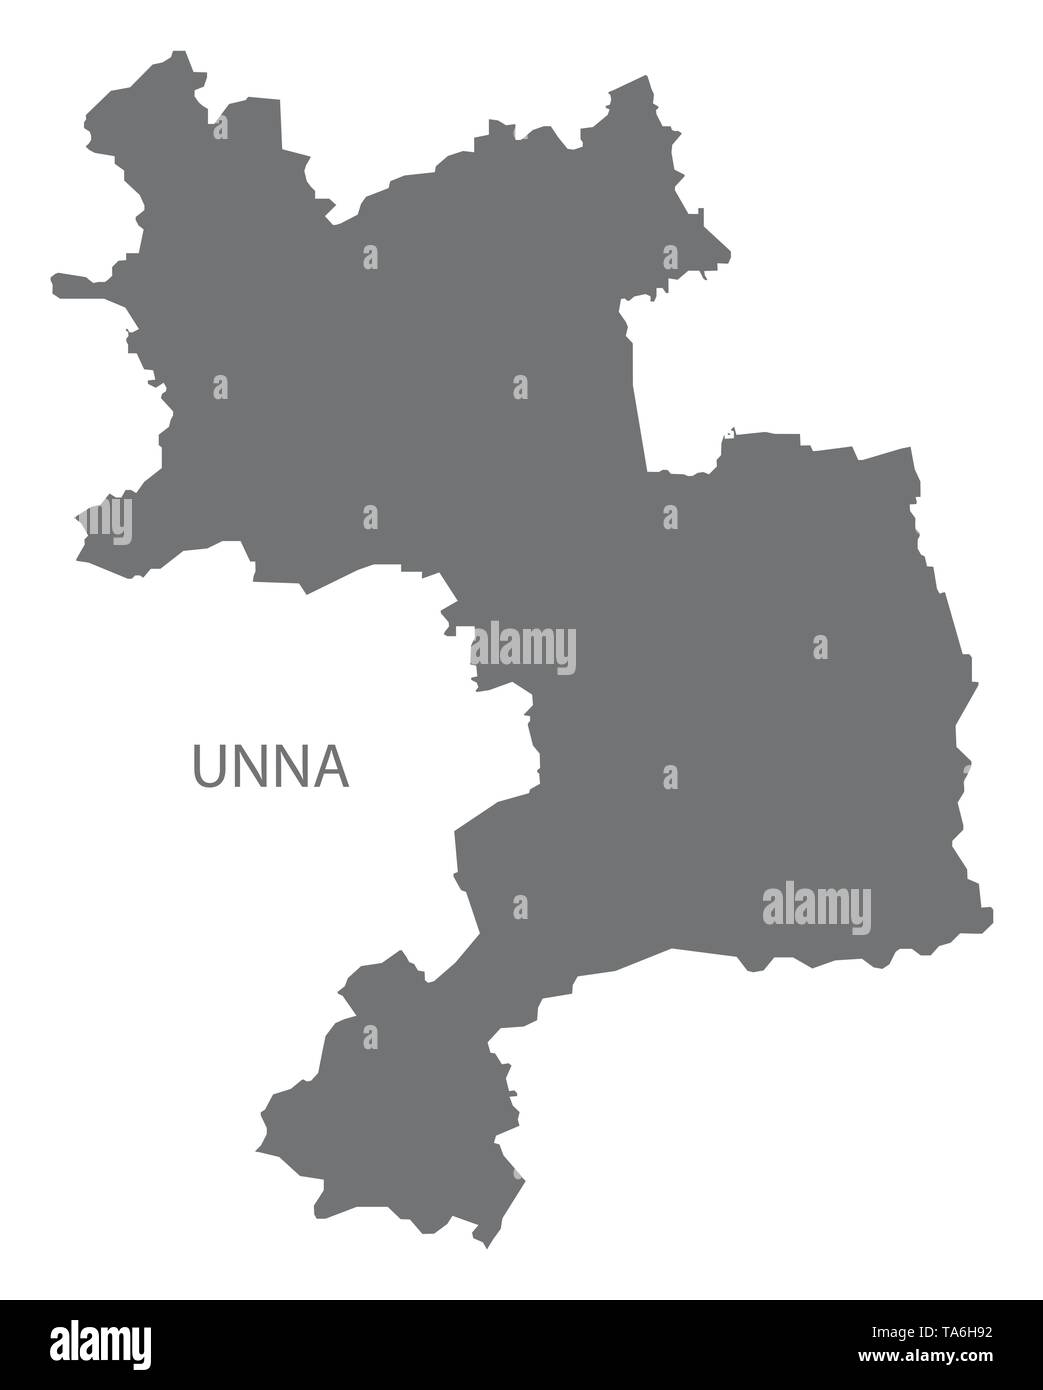 Unna gray county Karte von Nordrhein-westfalen DE Stock Vektor